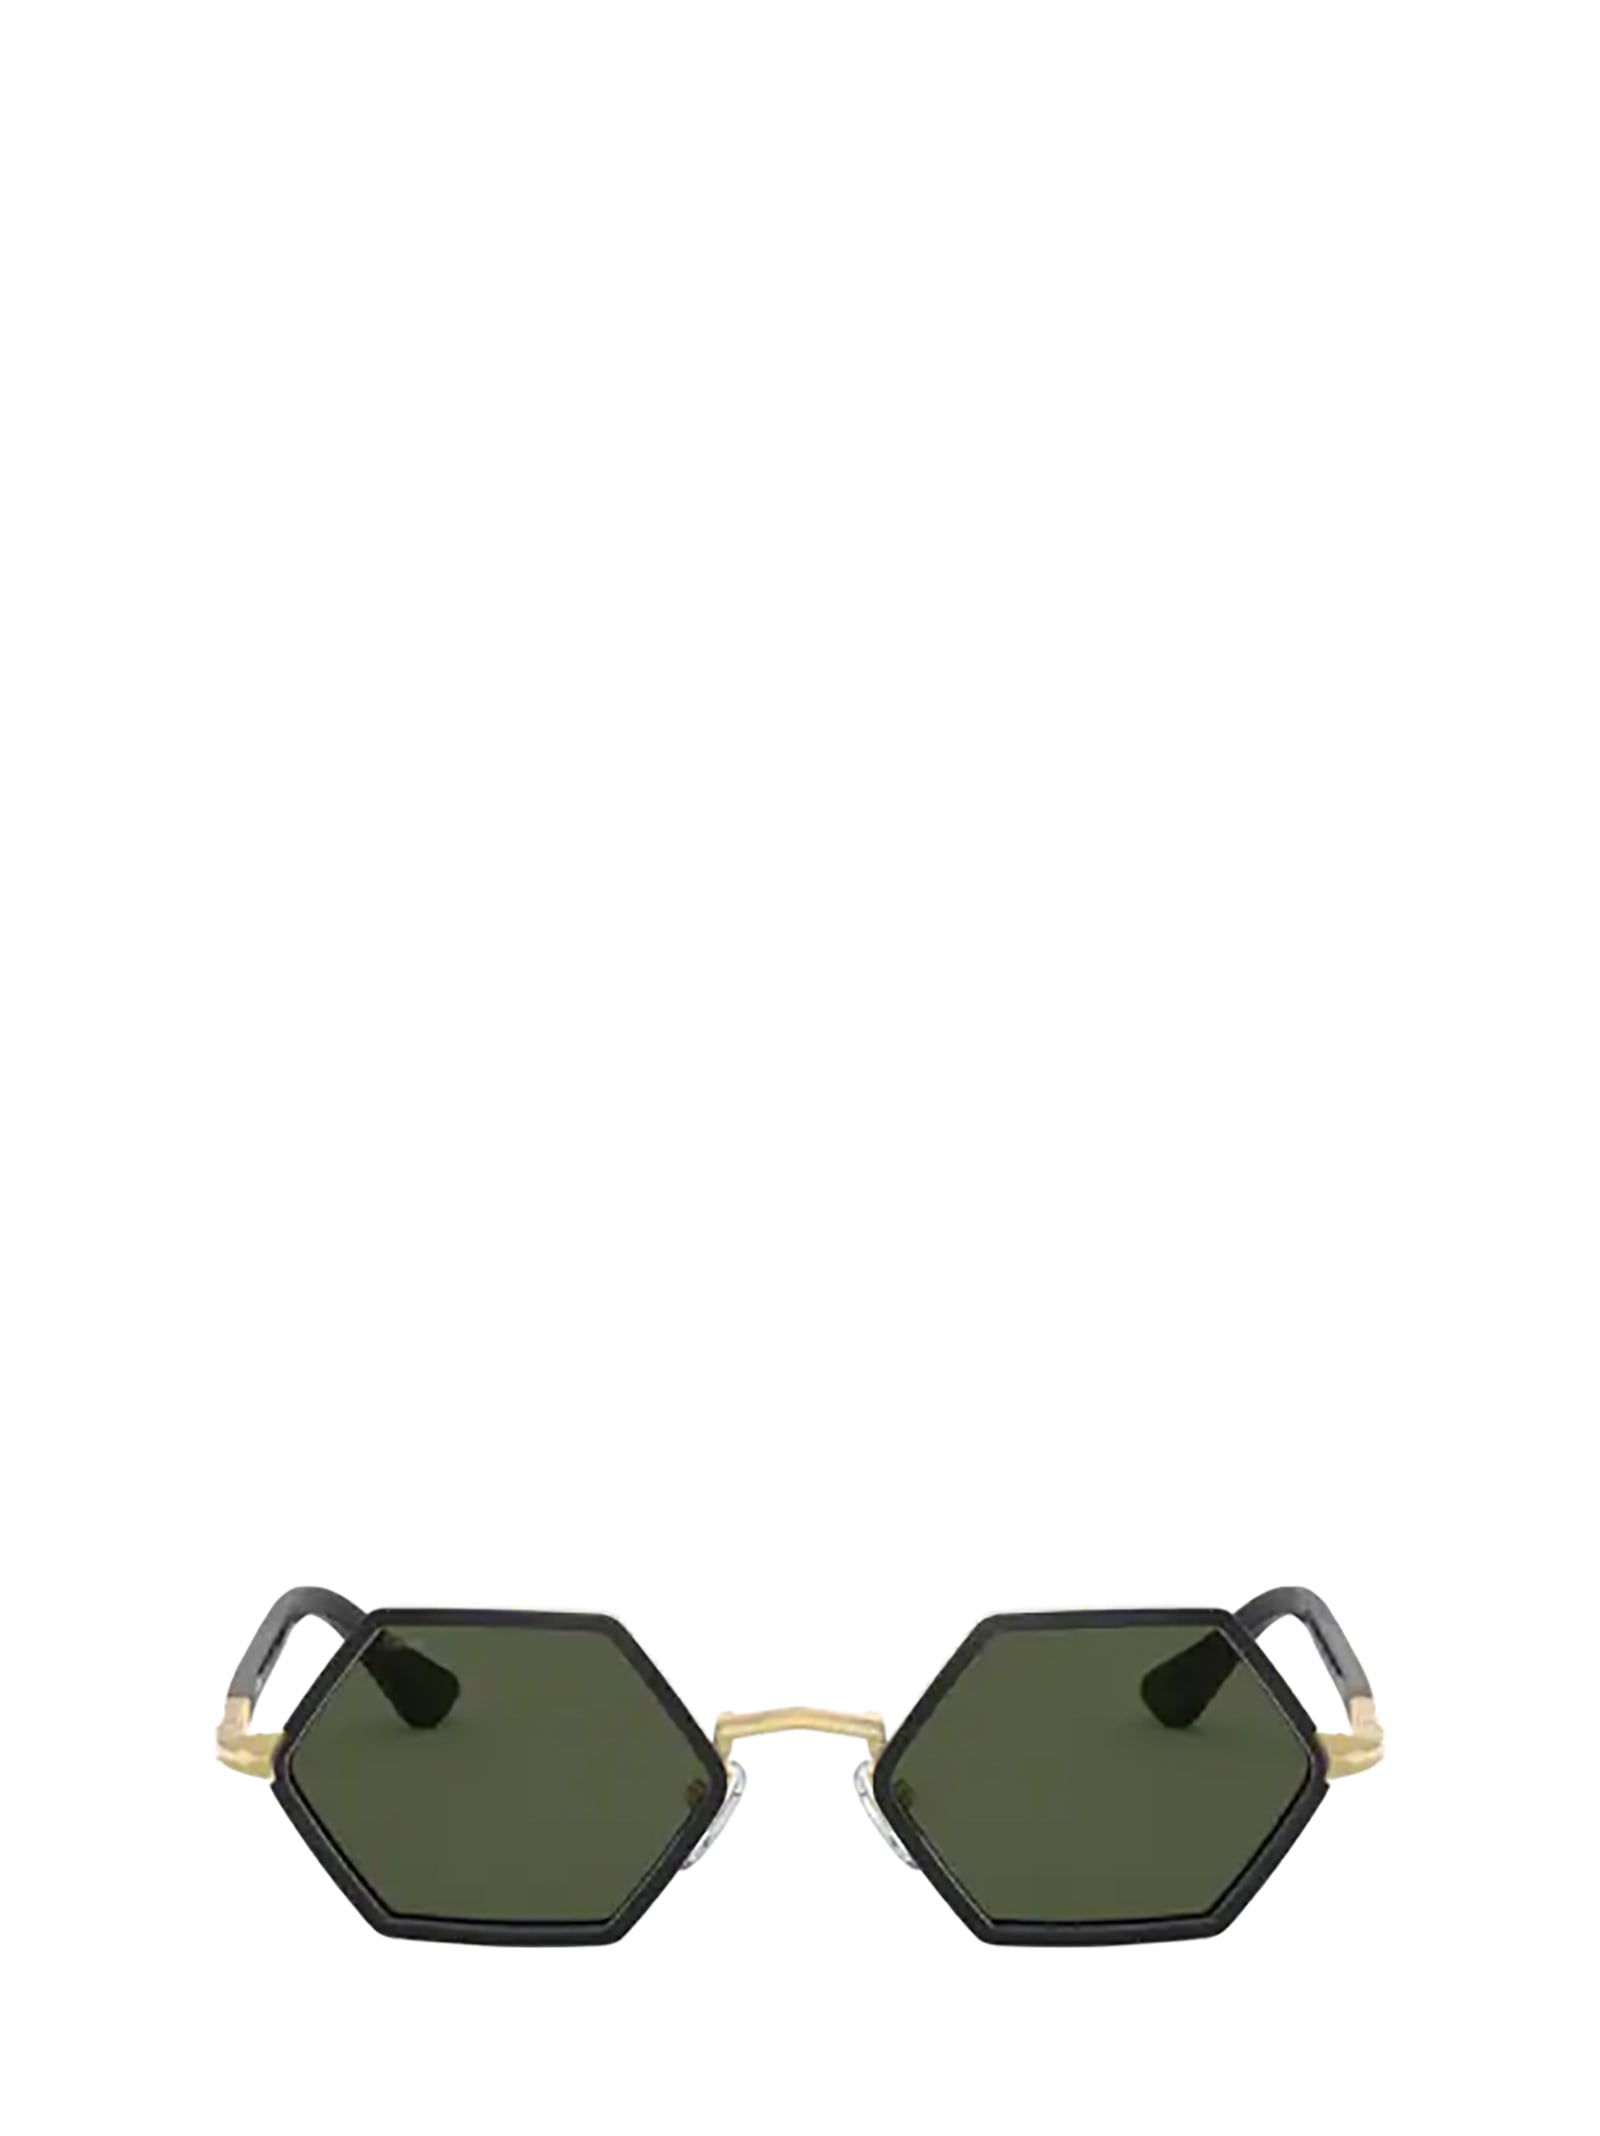 Persol Persol Po2472s Gold & Black Sunglasses